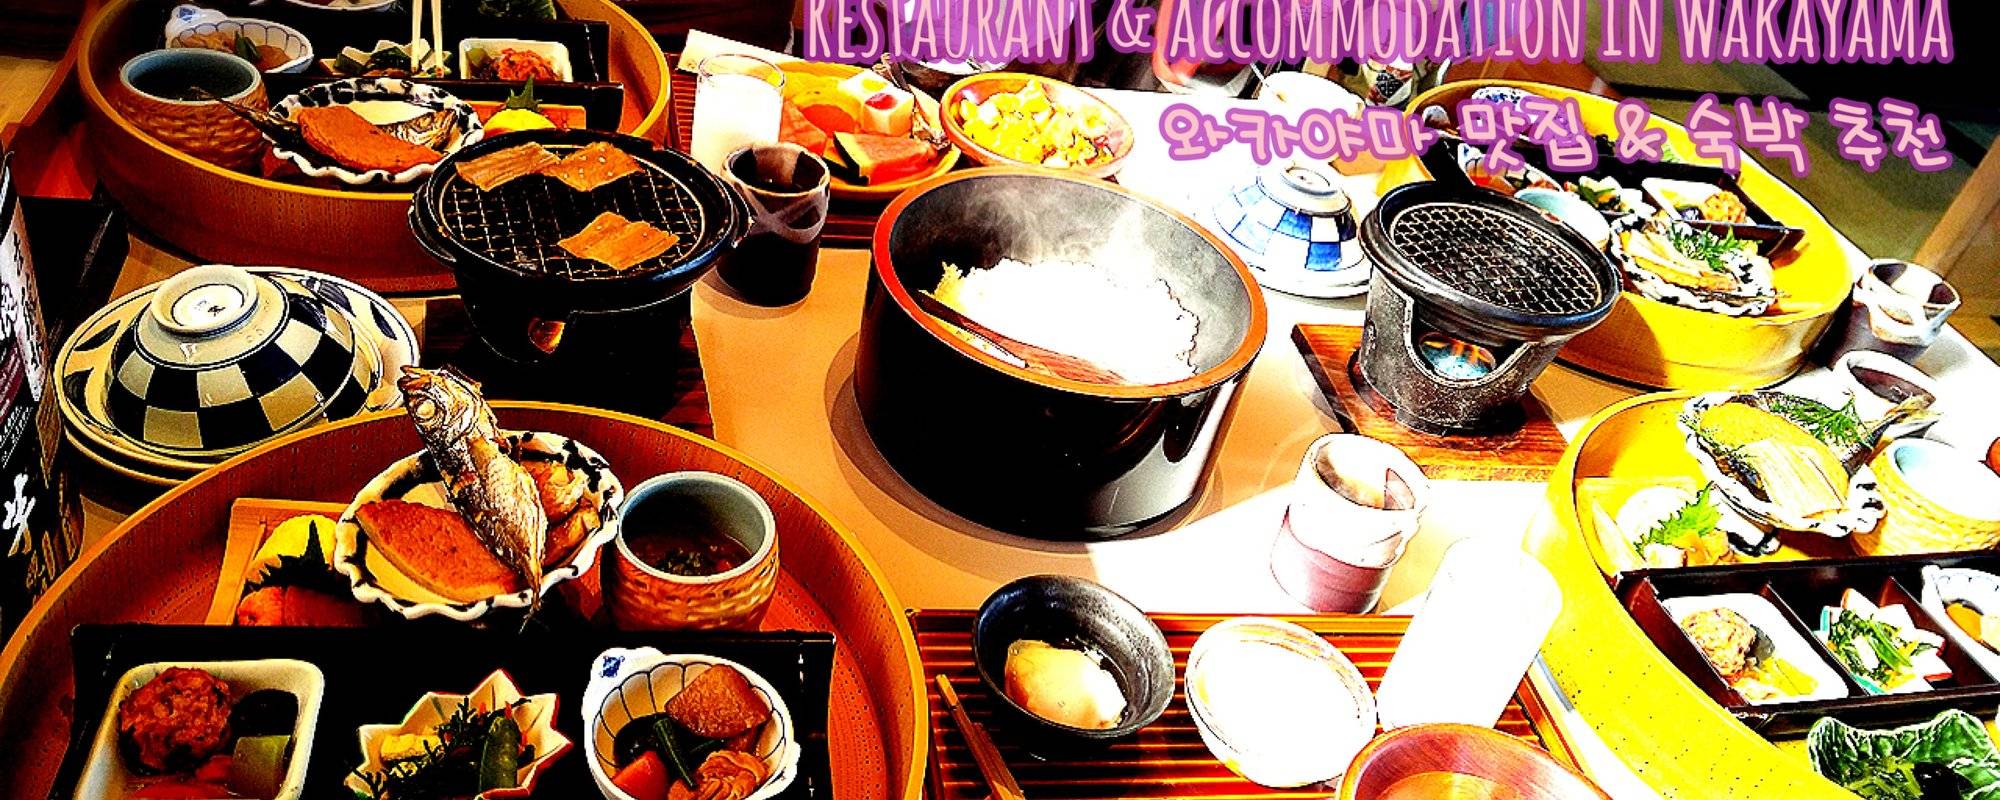 和歌山美食及住宿推介/Restaurant & Accommodation in Wakayama ulog#014